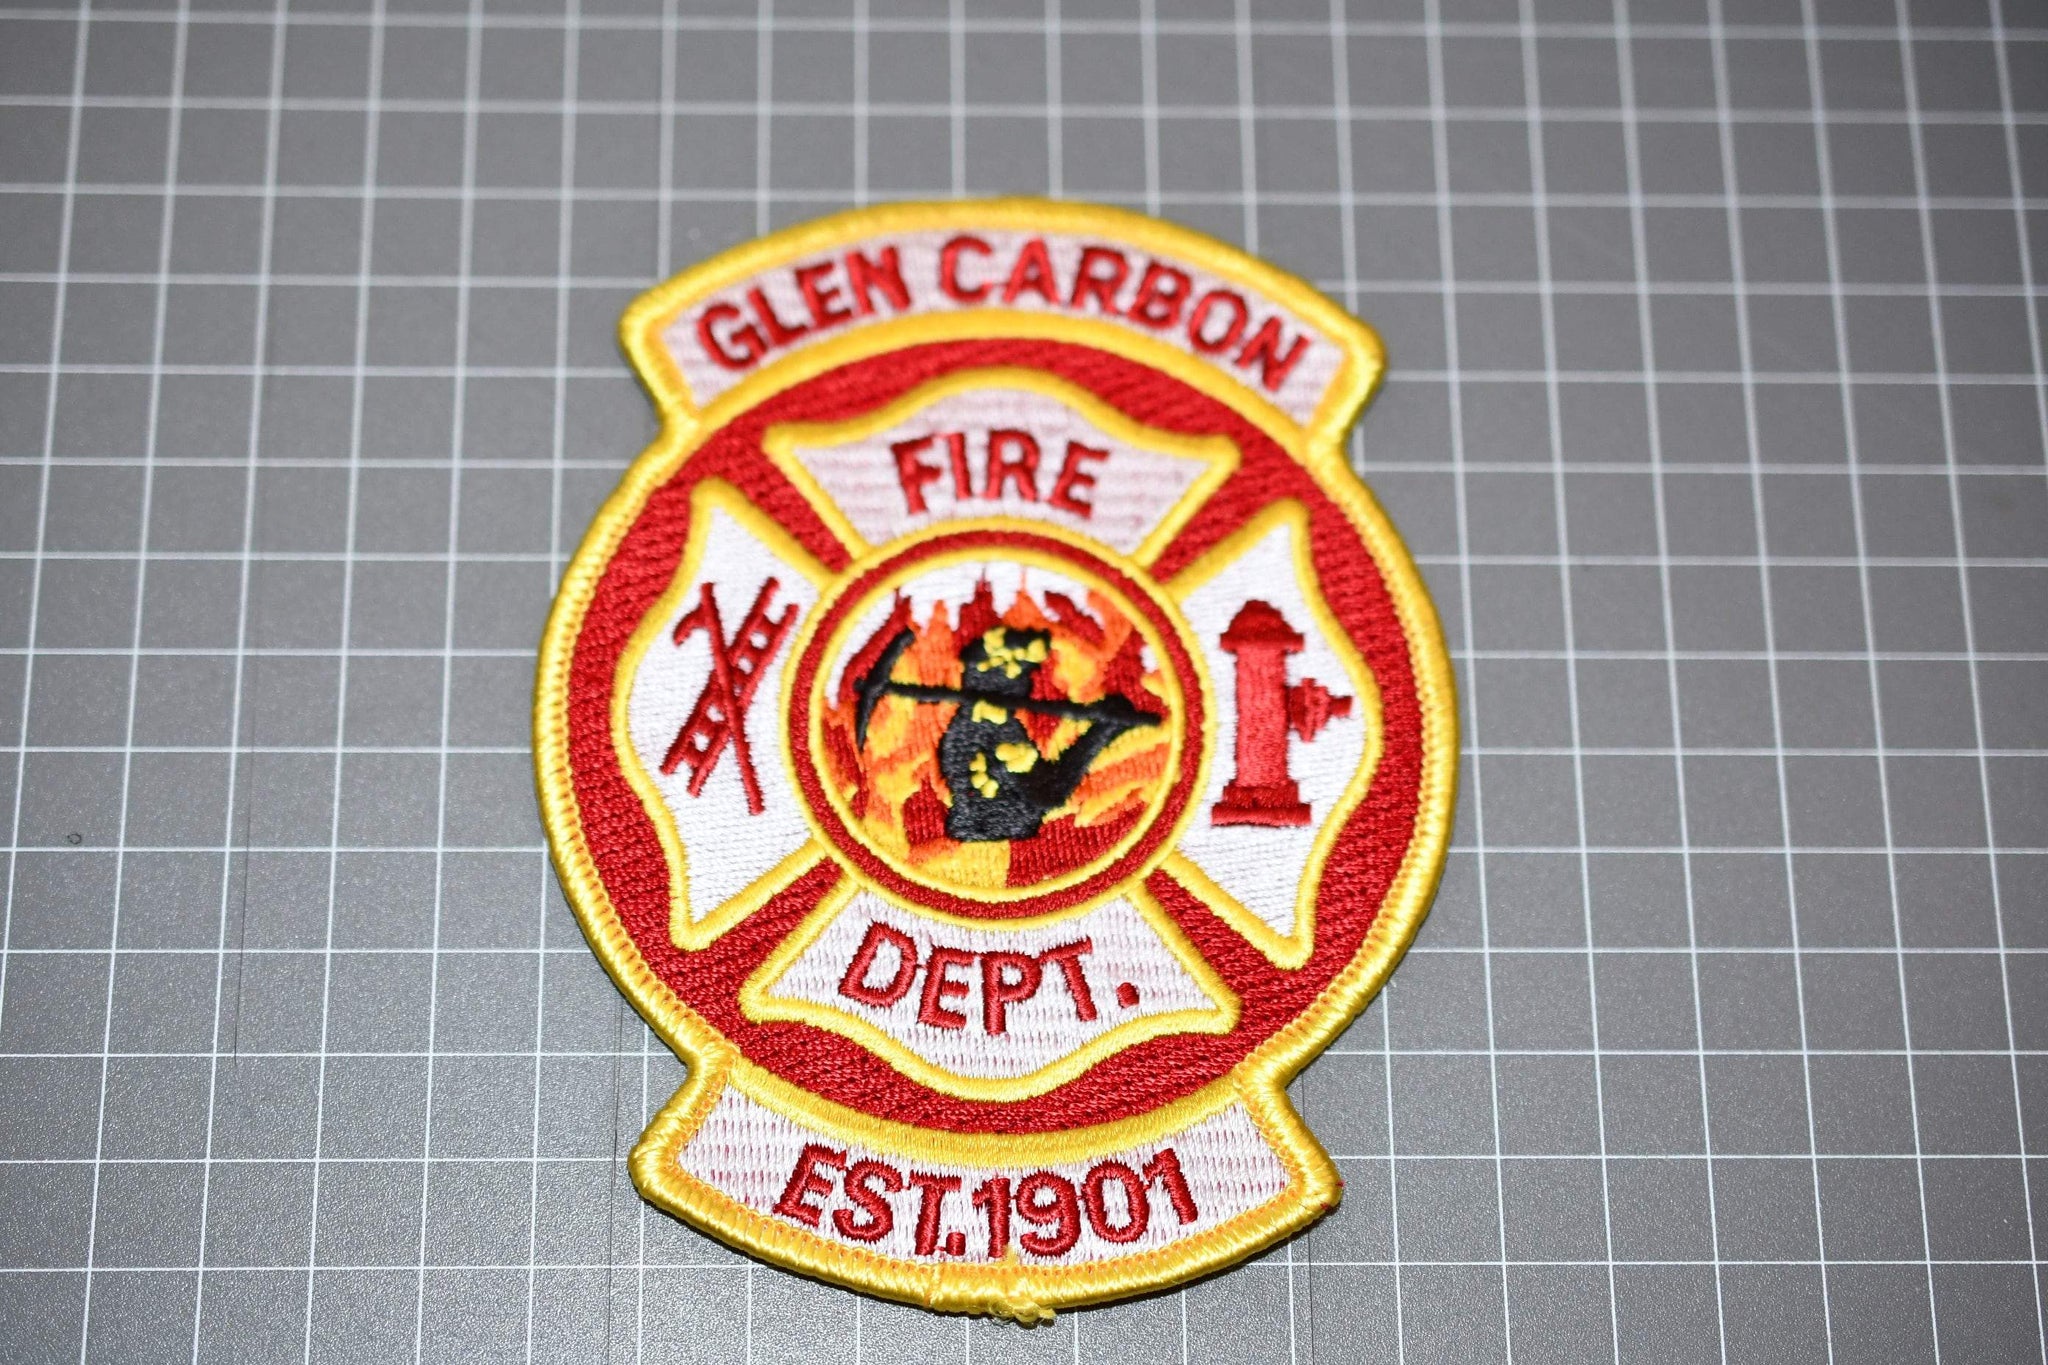 Glen Carbon Illinois Fire Department Patch (B8)